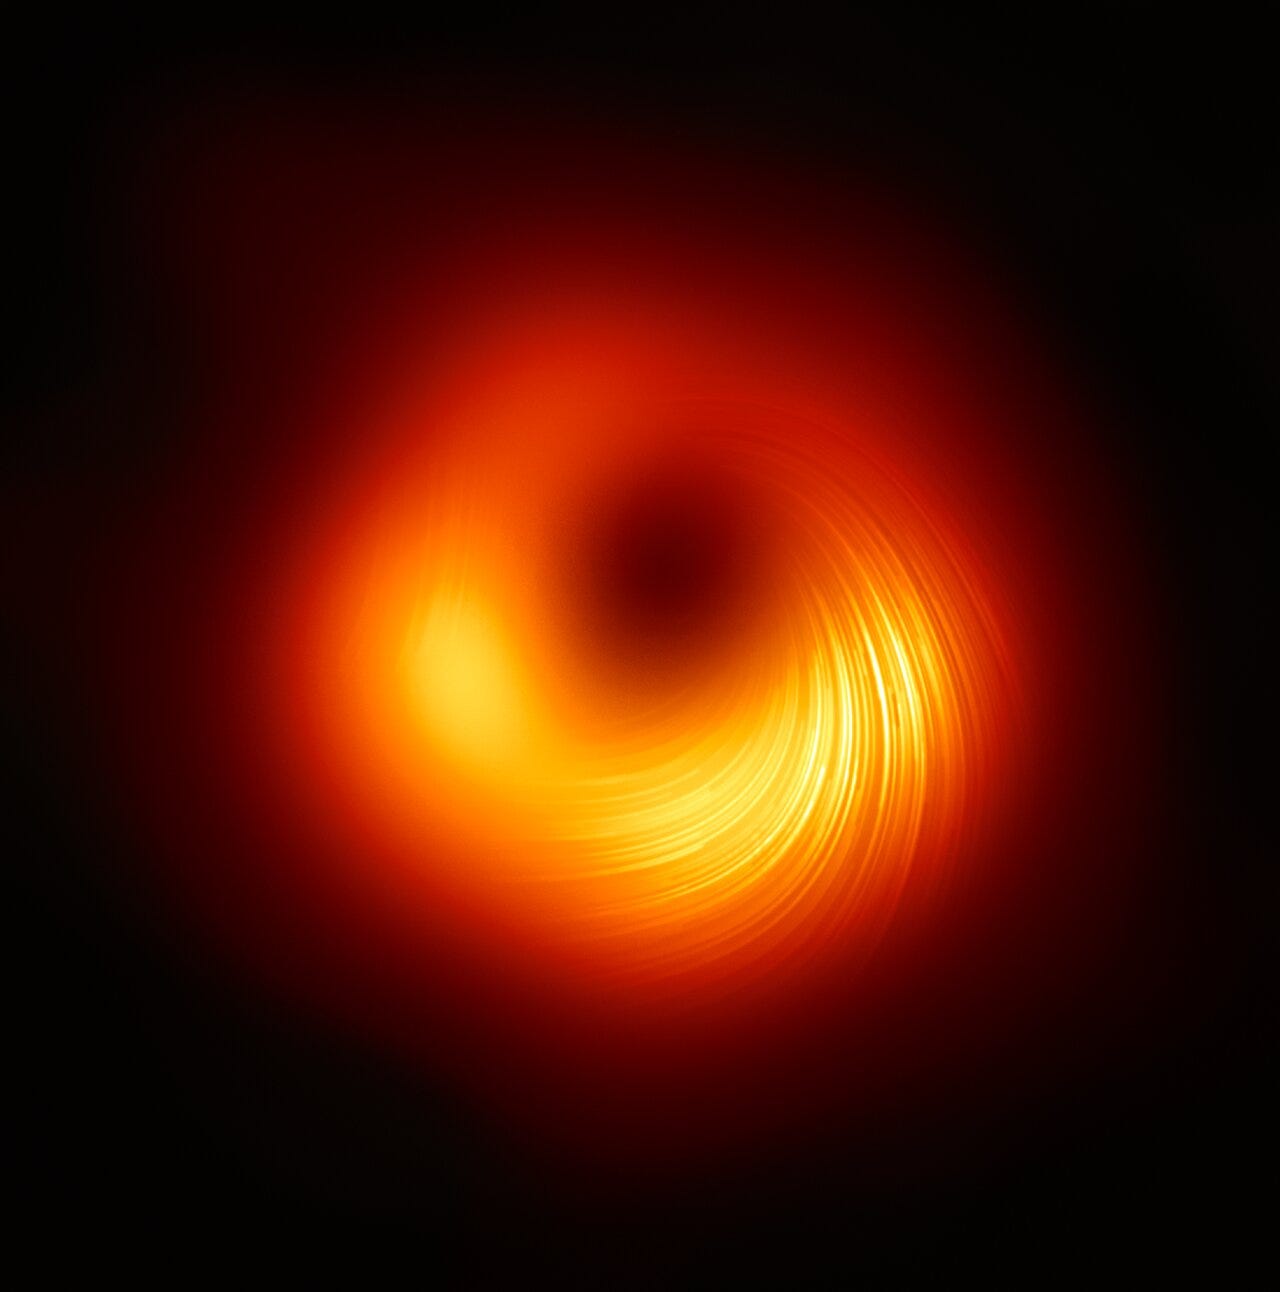 Profilo di polarizzazione della luce attorno al buco nero di M87